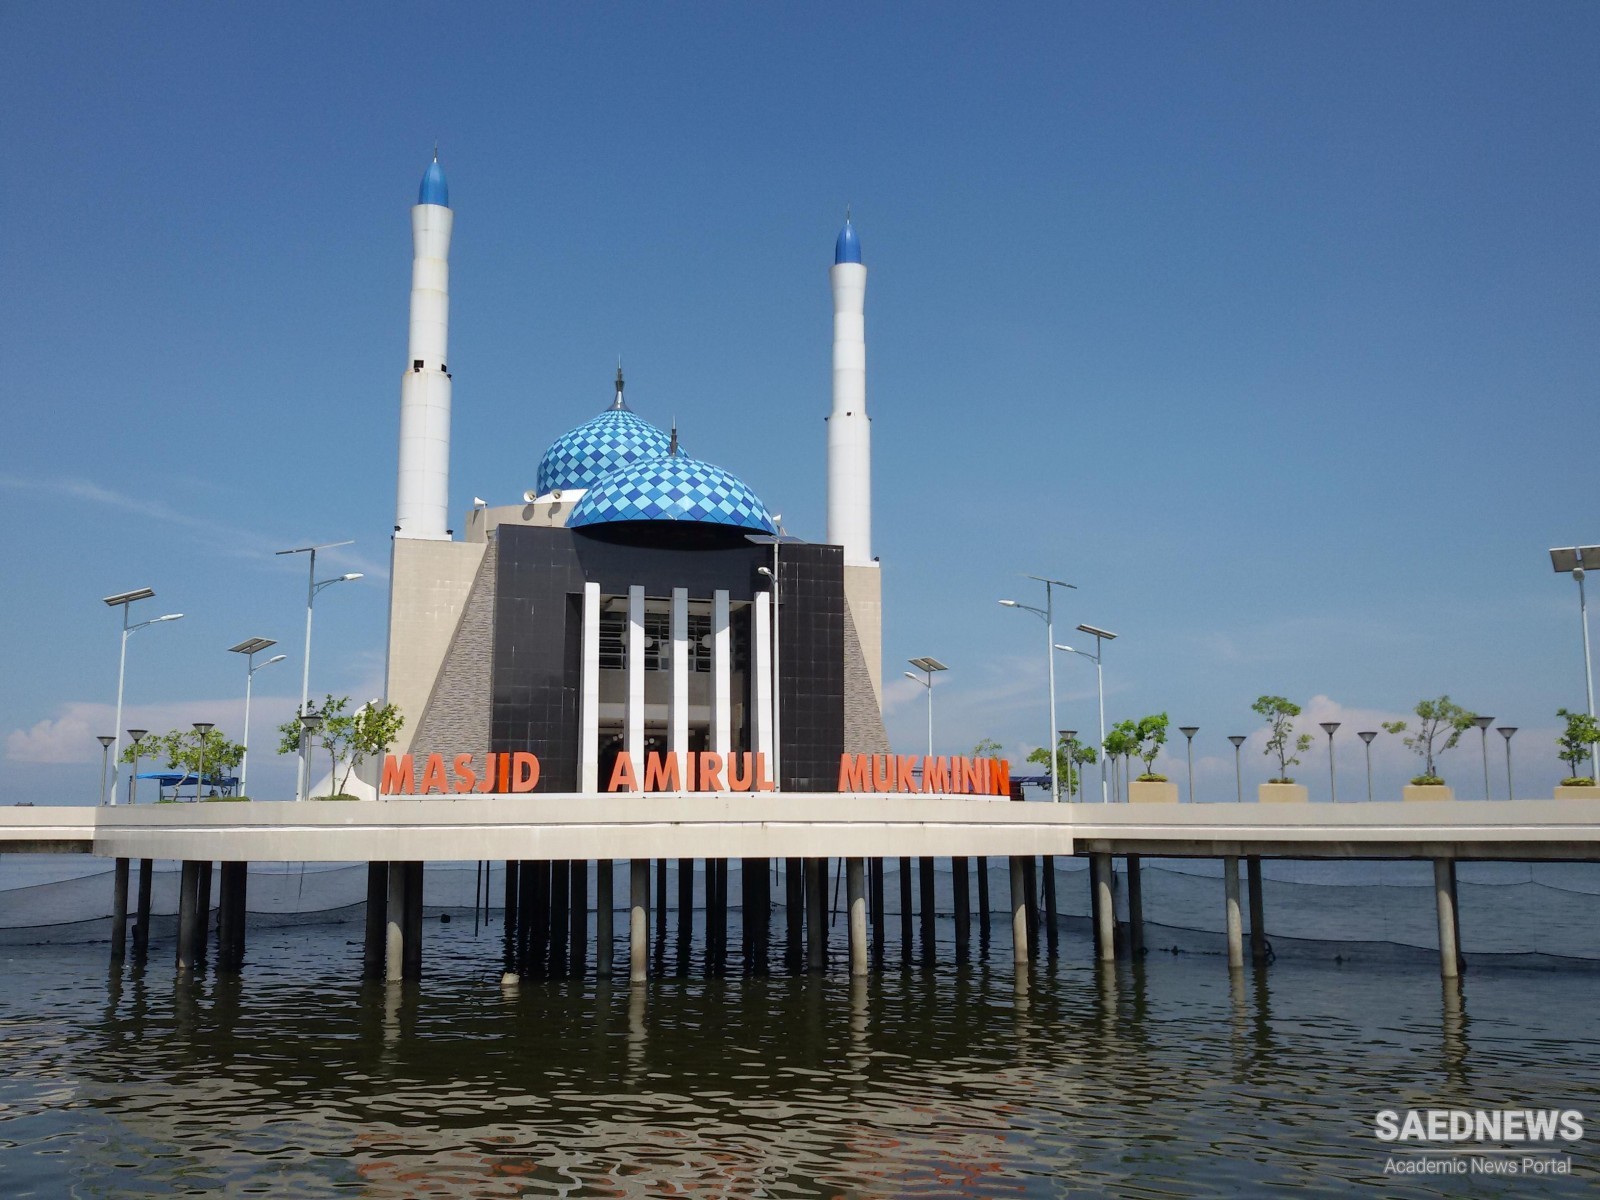 Amirul Mukminin Floating Mosque, Makassar, South Sulawesi